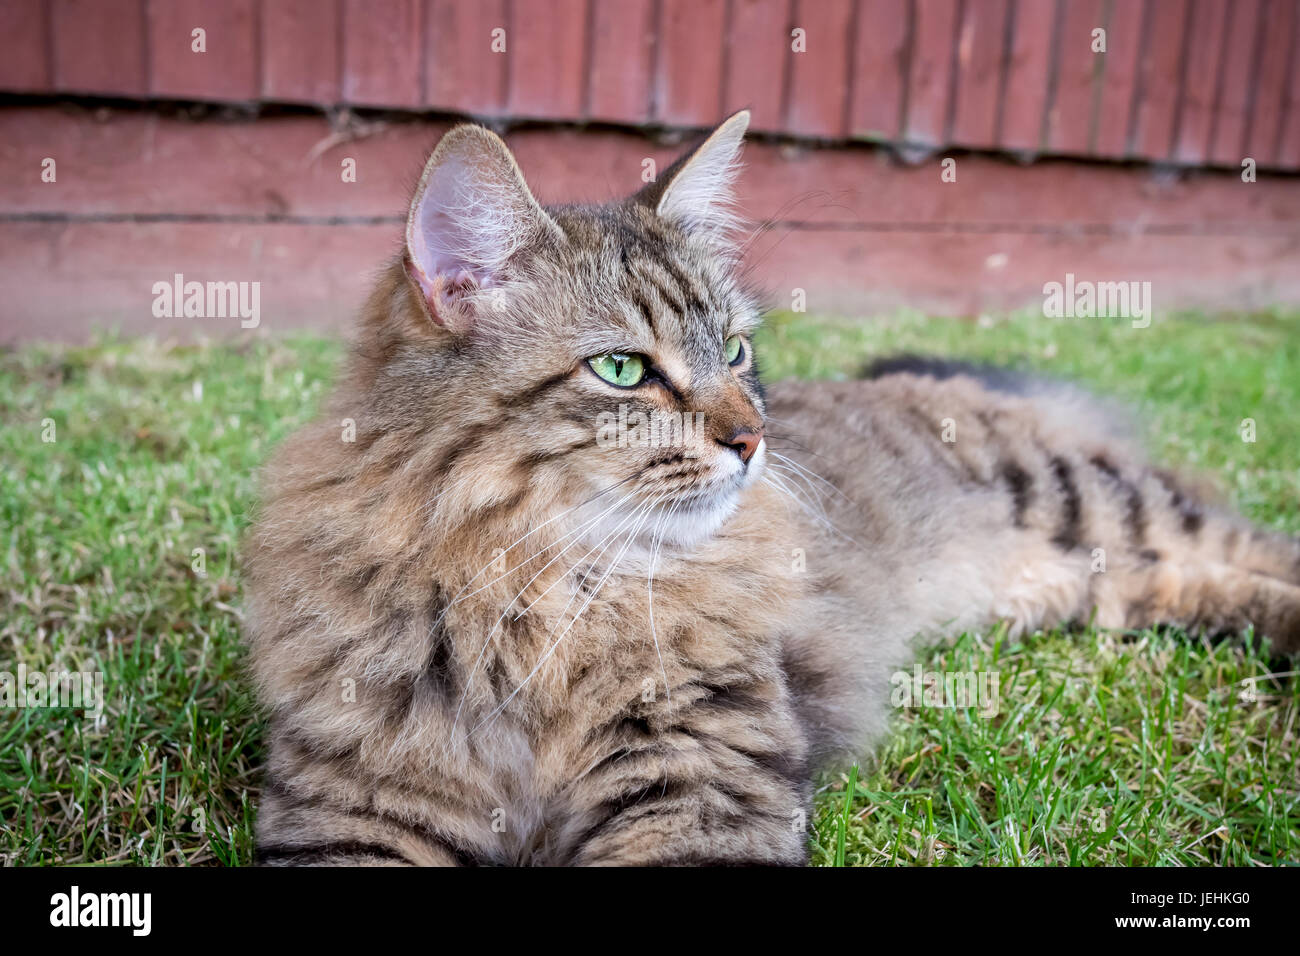 Pelo largo gato atigrado sentar afuera en un césped mirando hacia la derecha. Foto de stock